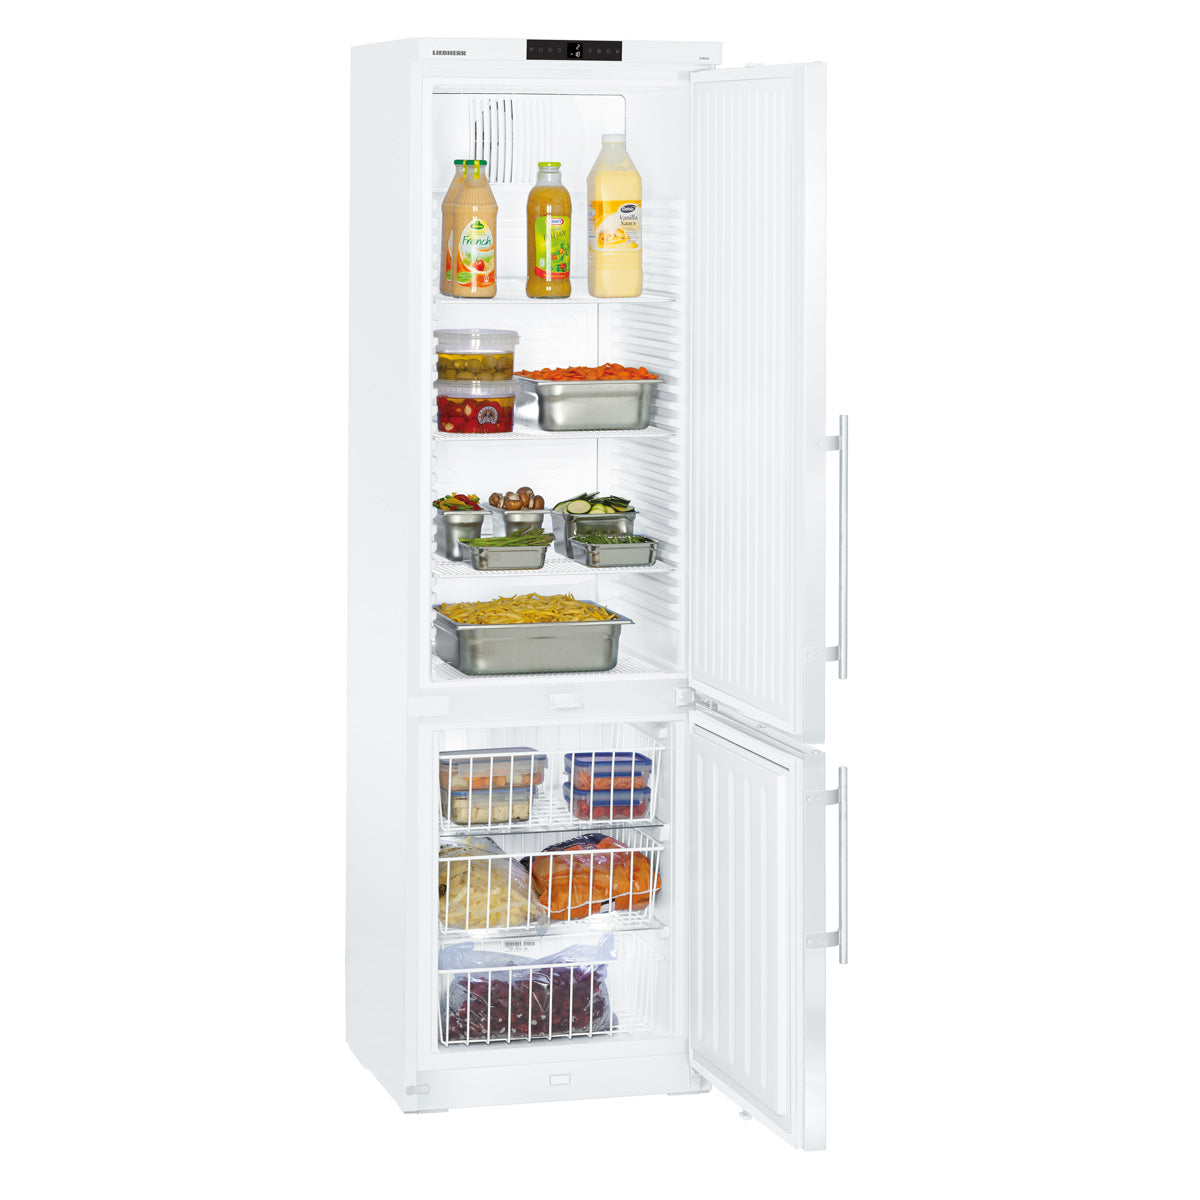 LIEBHERR Kjøleskap og fryser kombinasjon - 0,59 x 0,66 m - med 2 dører - 254 + 107 liter (brutto)